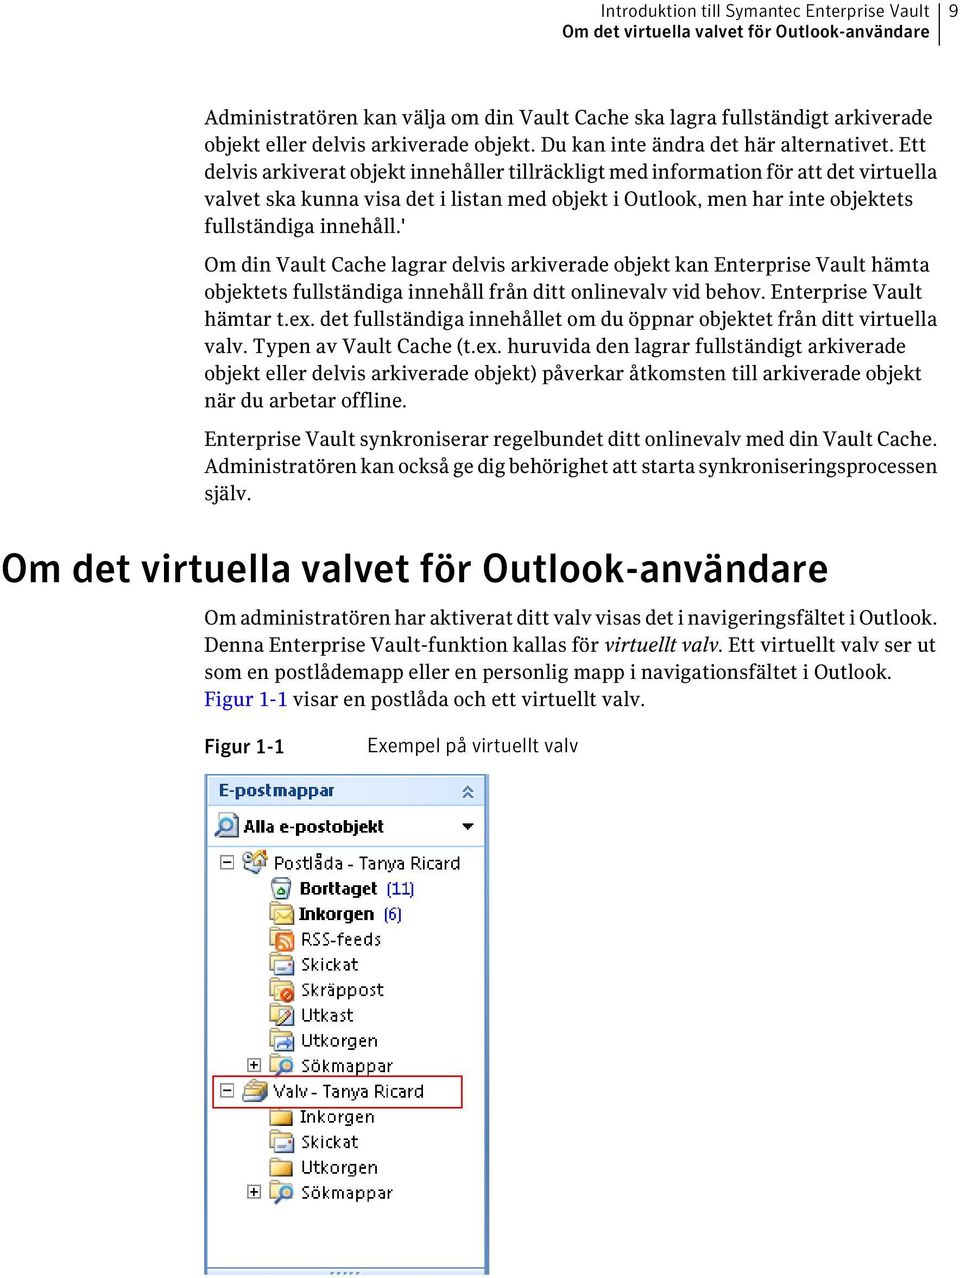 Ett delvis arkiverat objekt innehåller tillräckligt med information för att det virtuella valvet ska kunna visa det i listan med objekt i Outlook, men har inte objektets fullständiga innehåll.